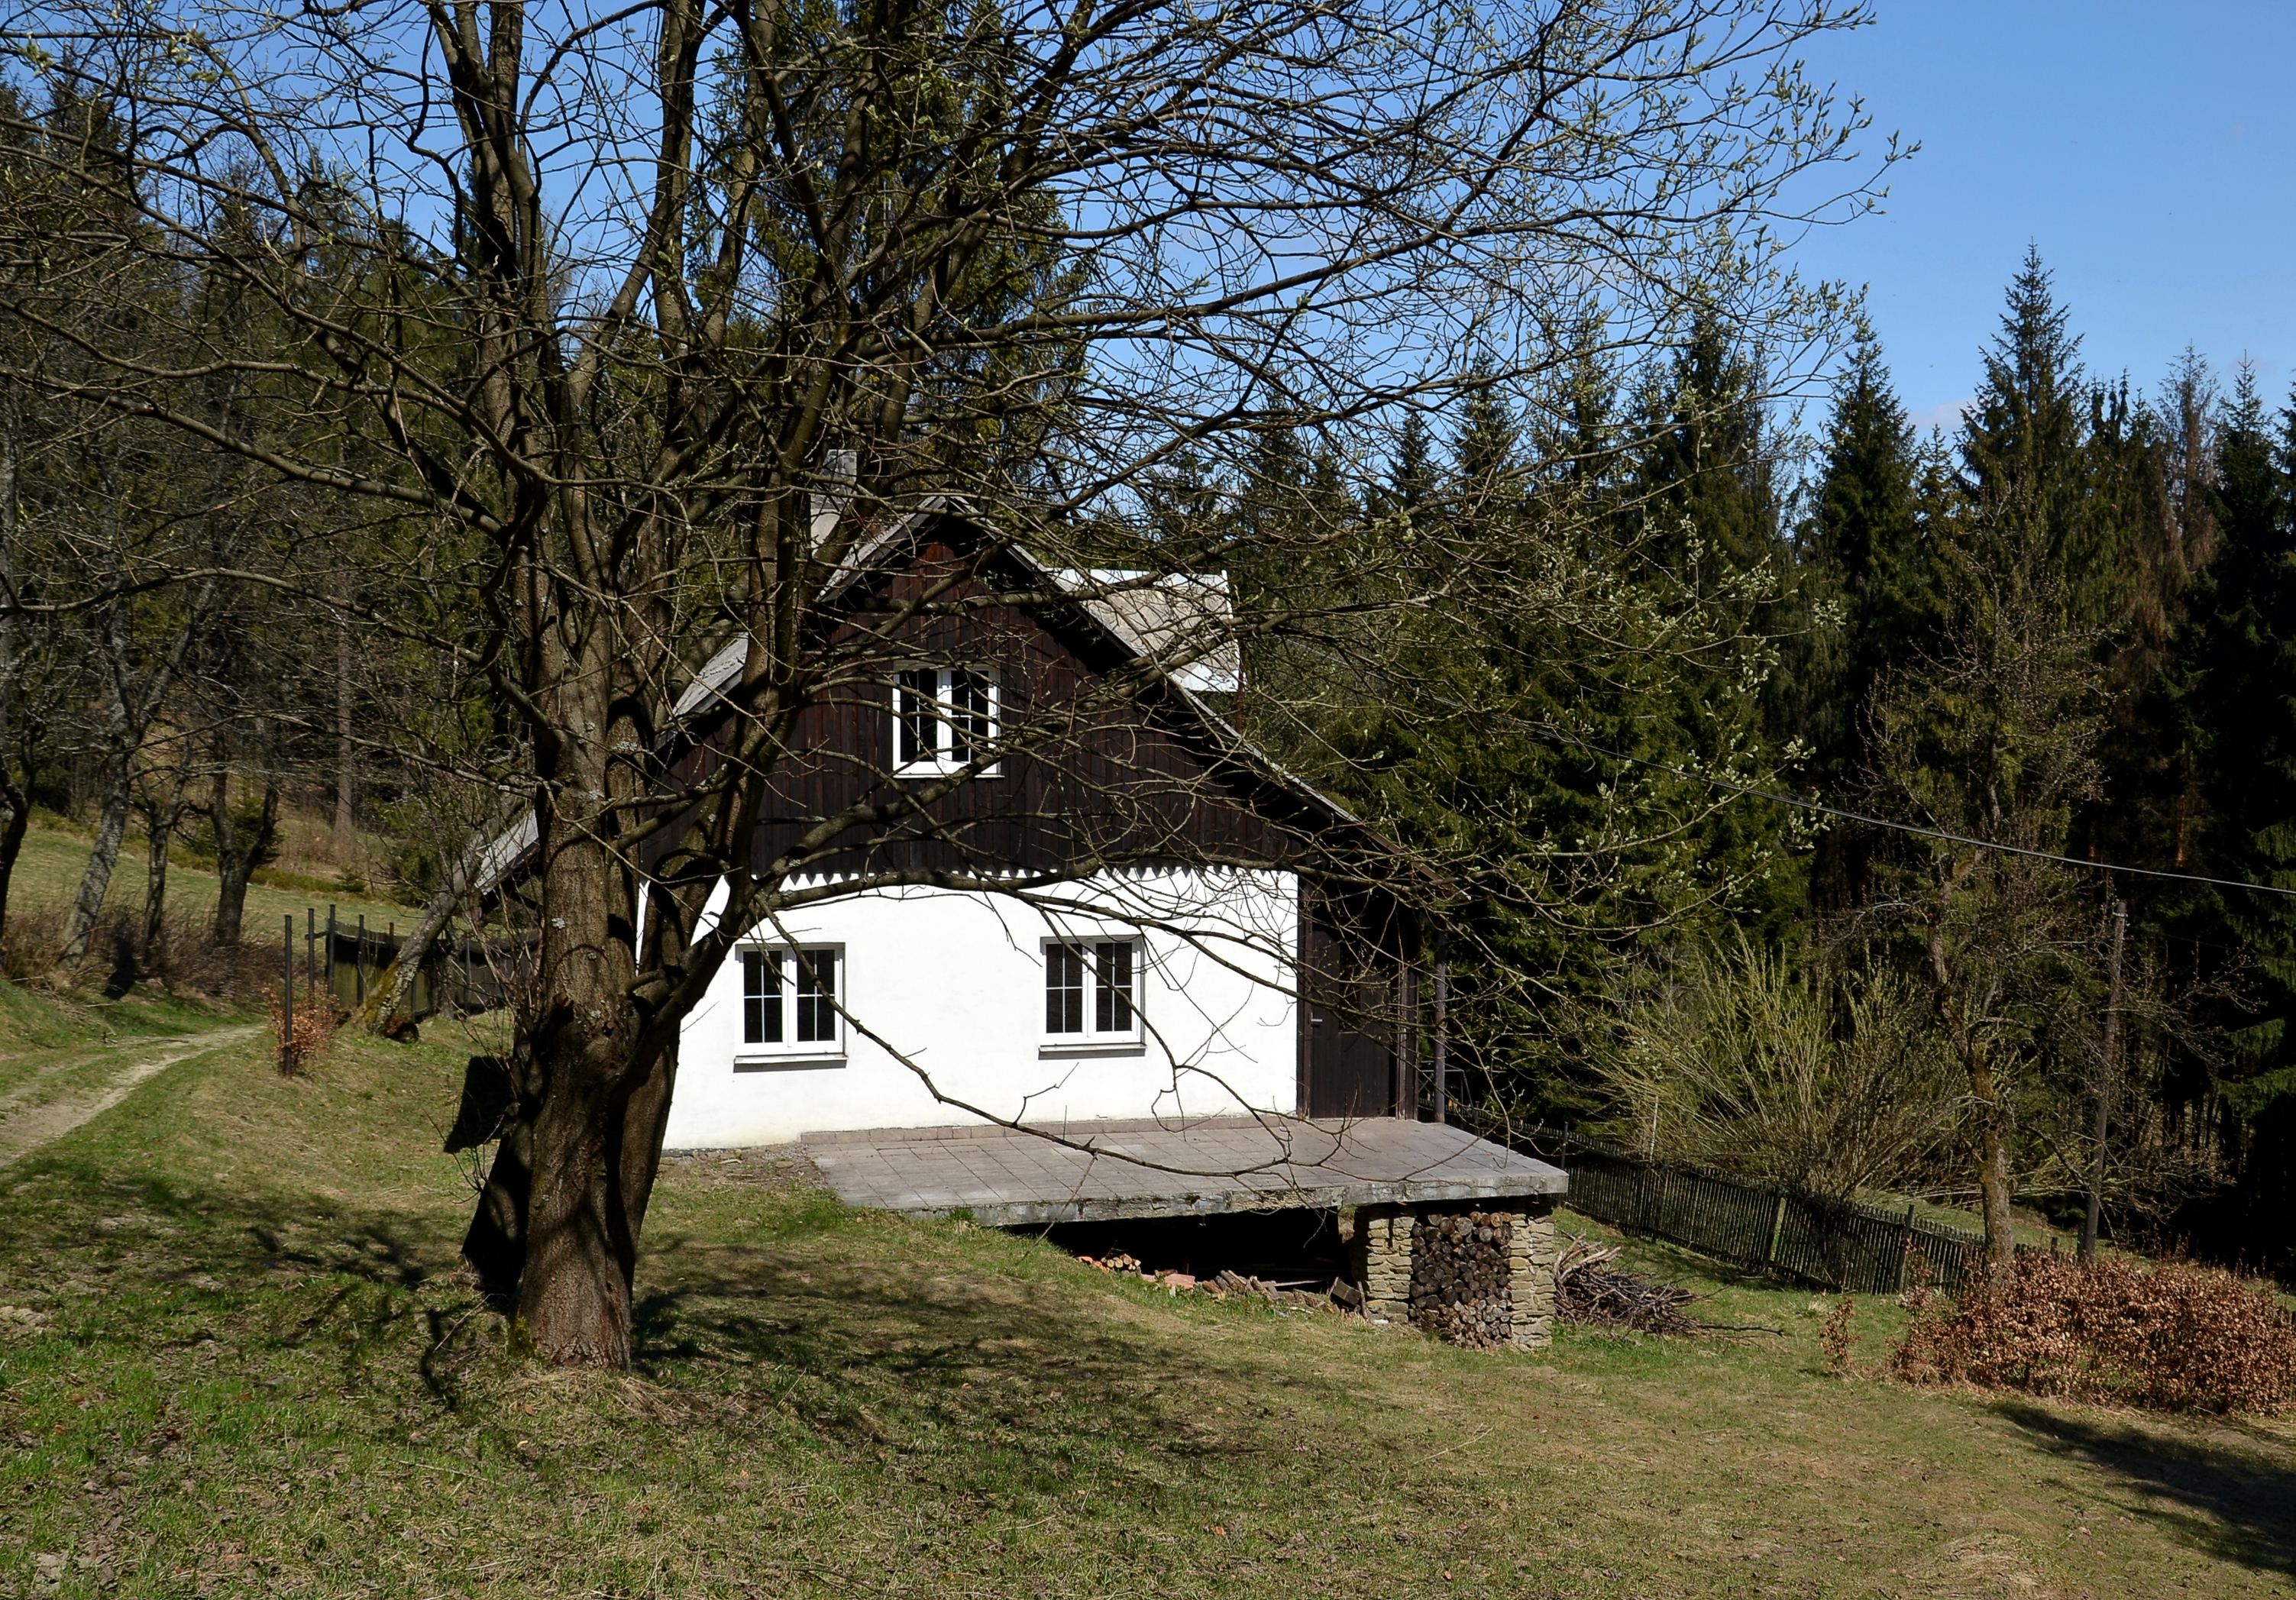 Slezské Beskydy (Beskid Śląski) - house near Gírová (Girowa)